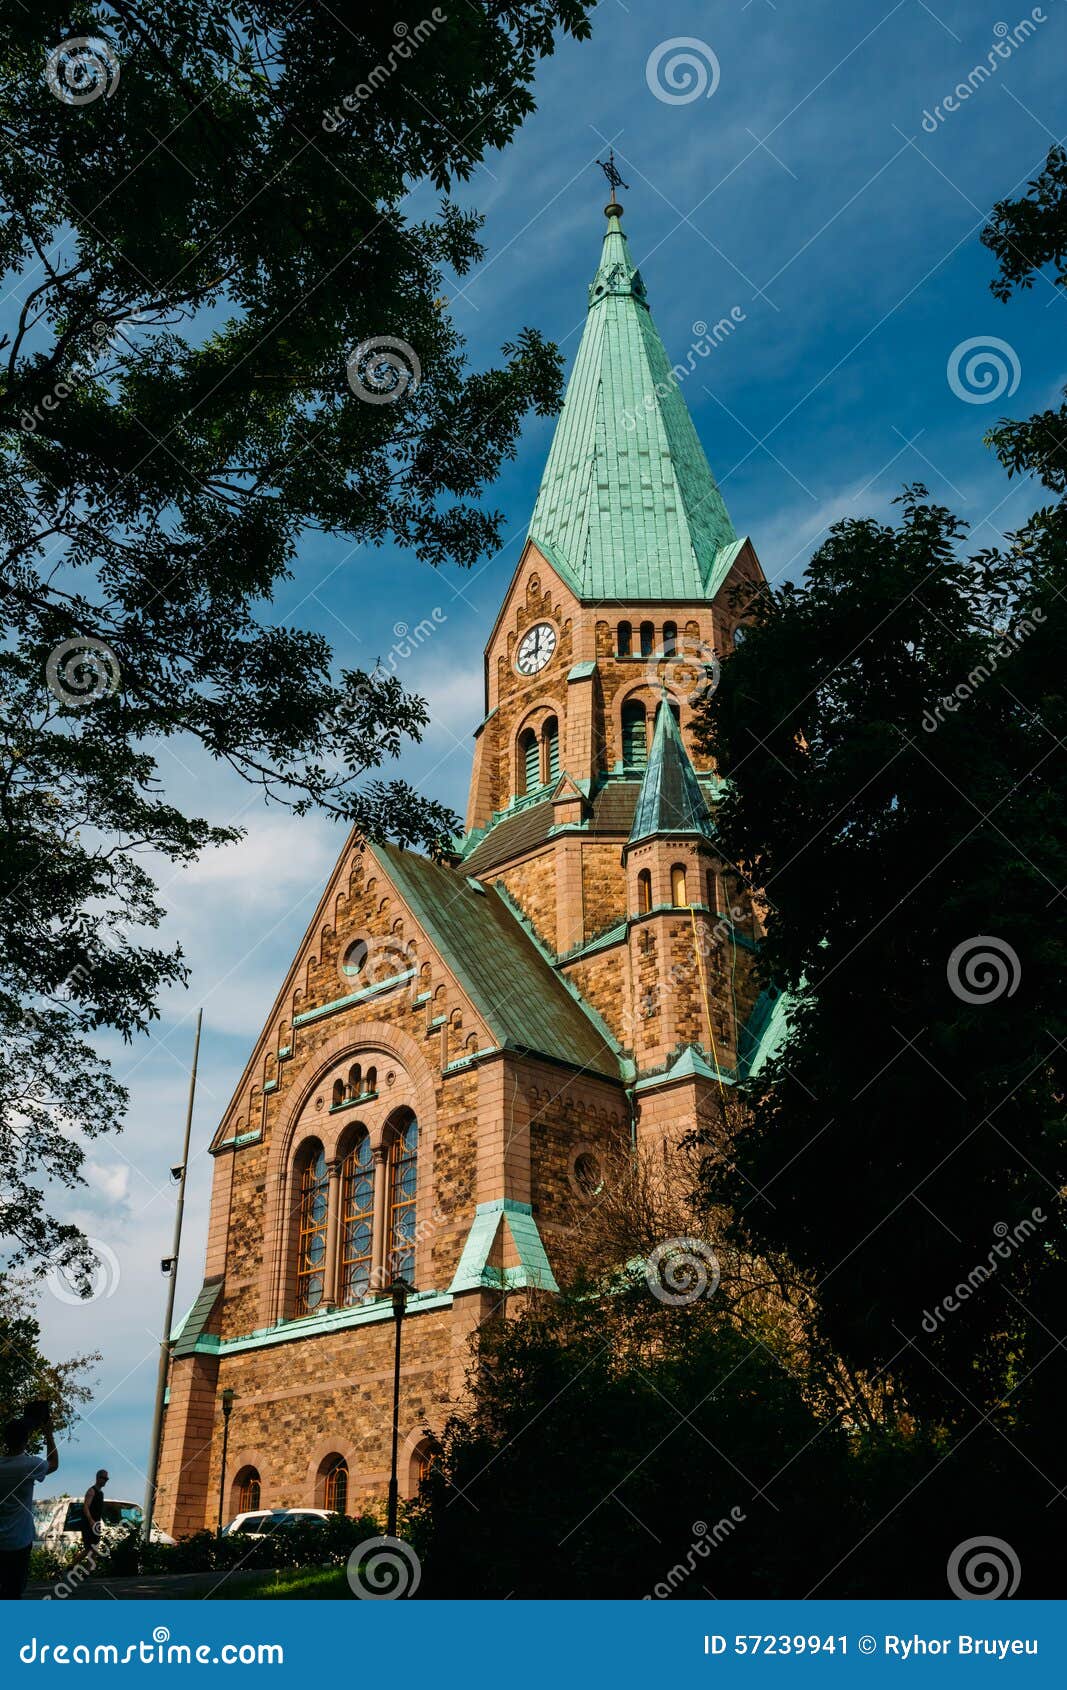 building of sofia kyrka - sofia church in